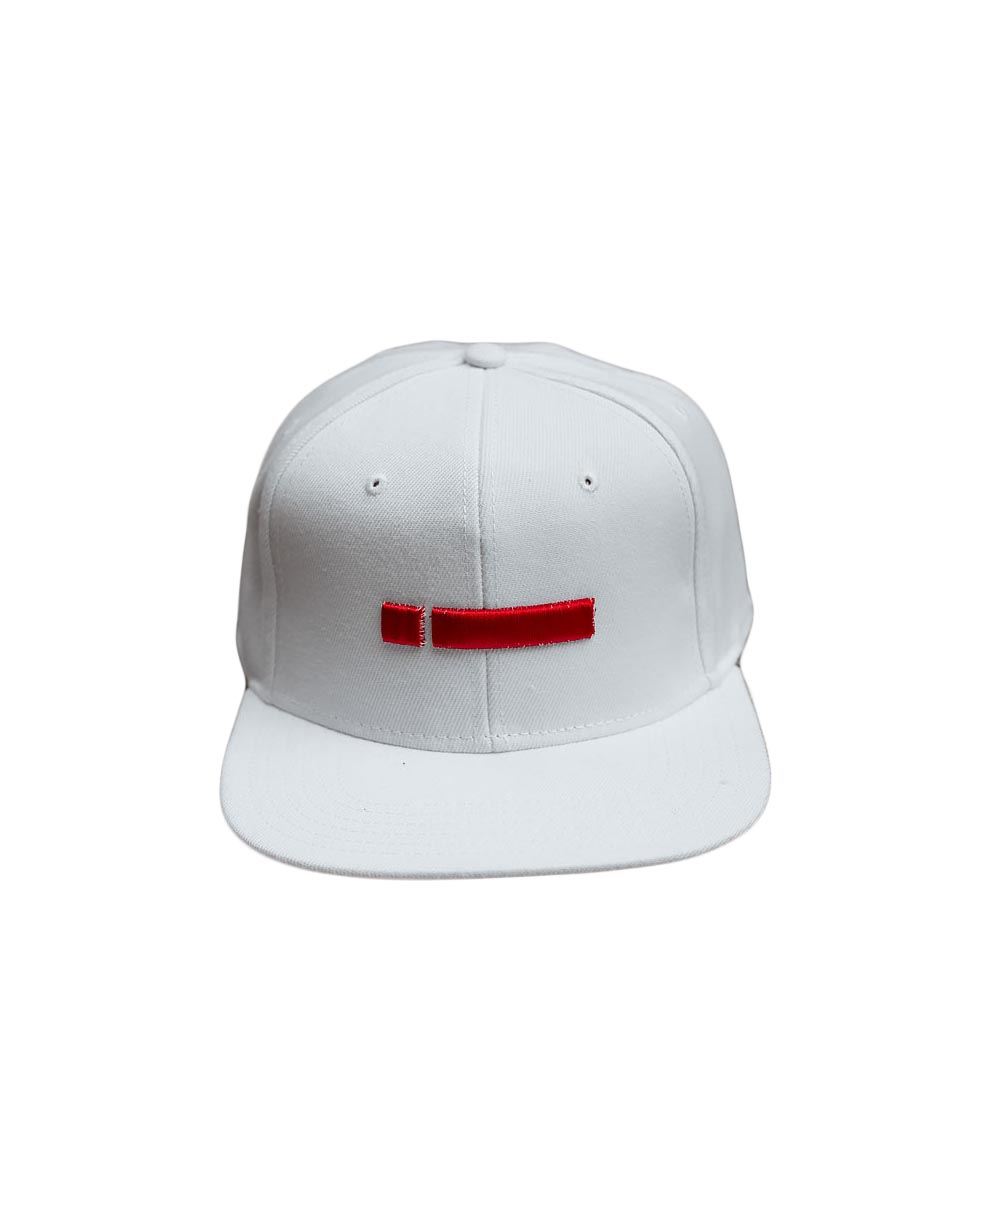 leuko white snapback hat kapelo me geiso kai kokkino red kenthmeno logo logotupo iclothins spring summer